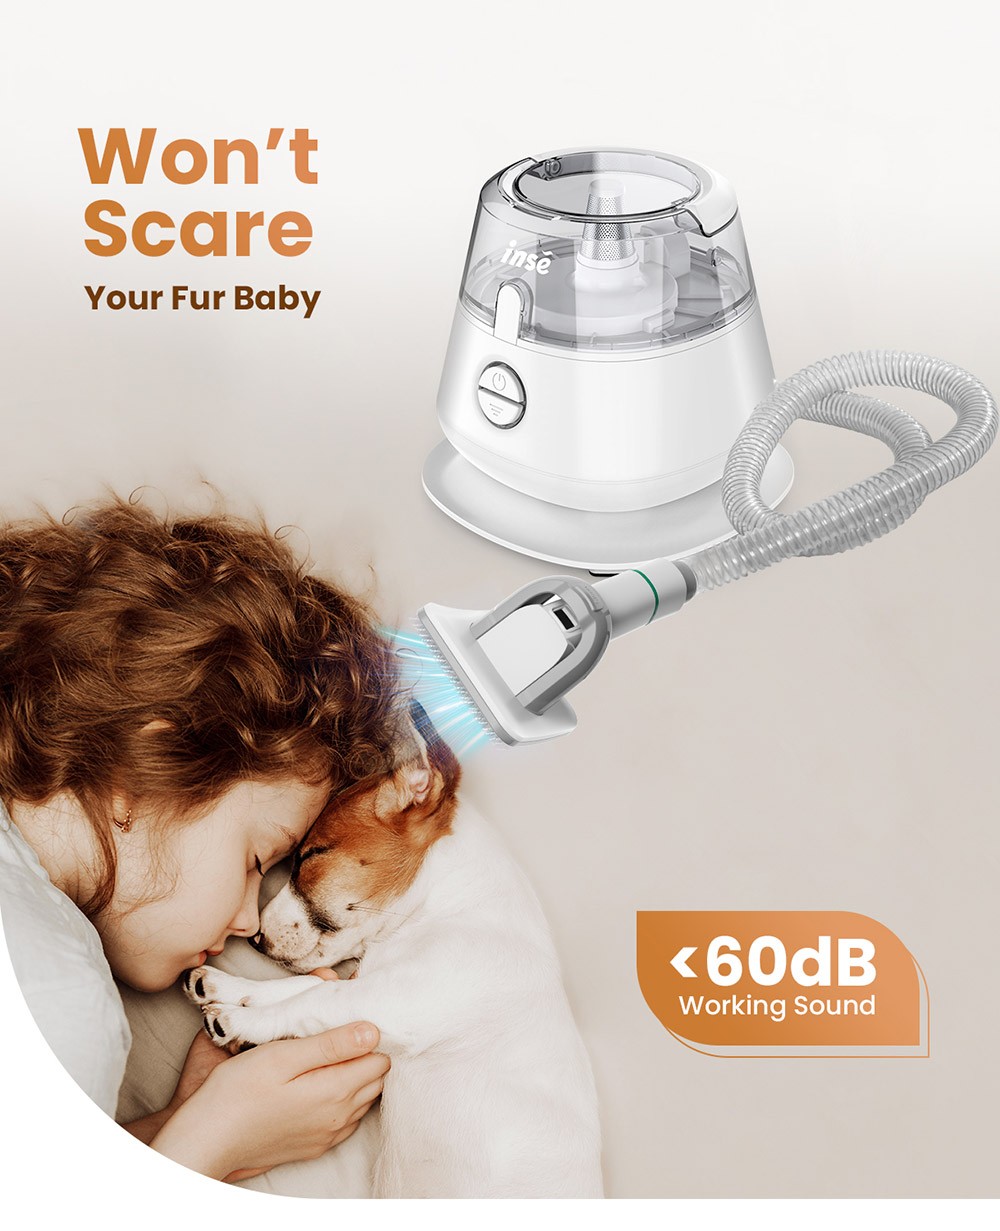 INSE P20 Pro Grooming Kit Trimmer Aspirapolvere per Animali Domestici